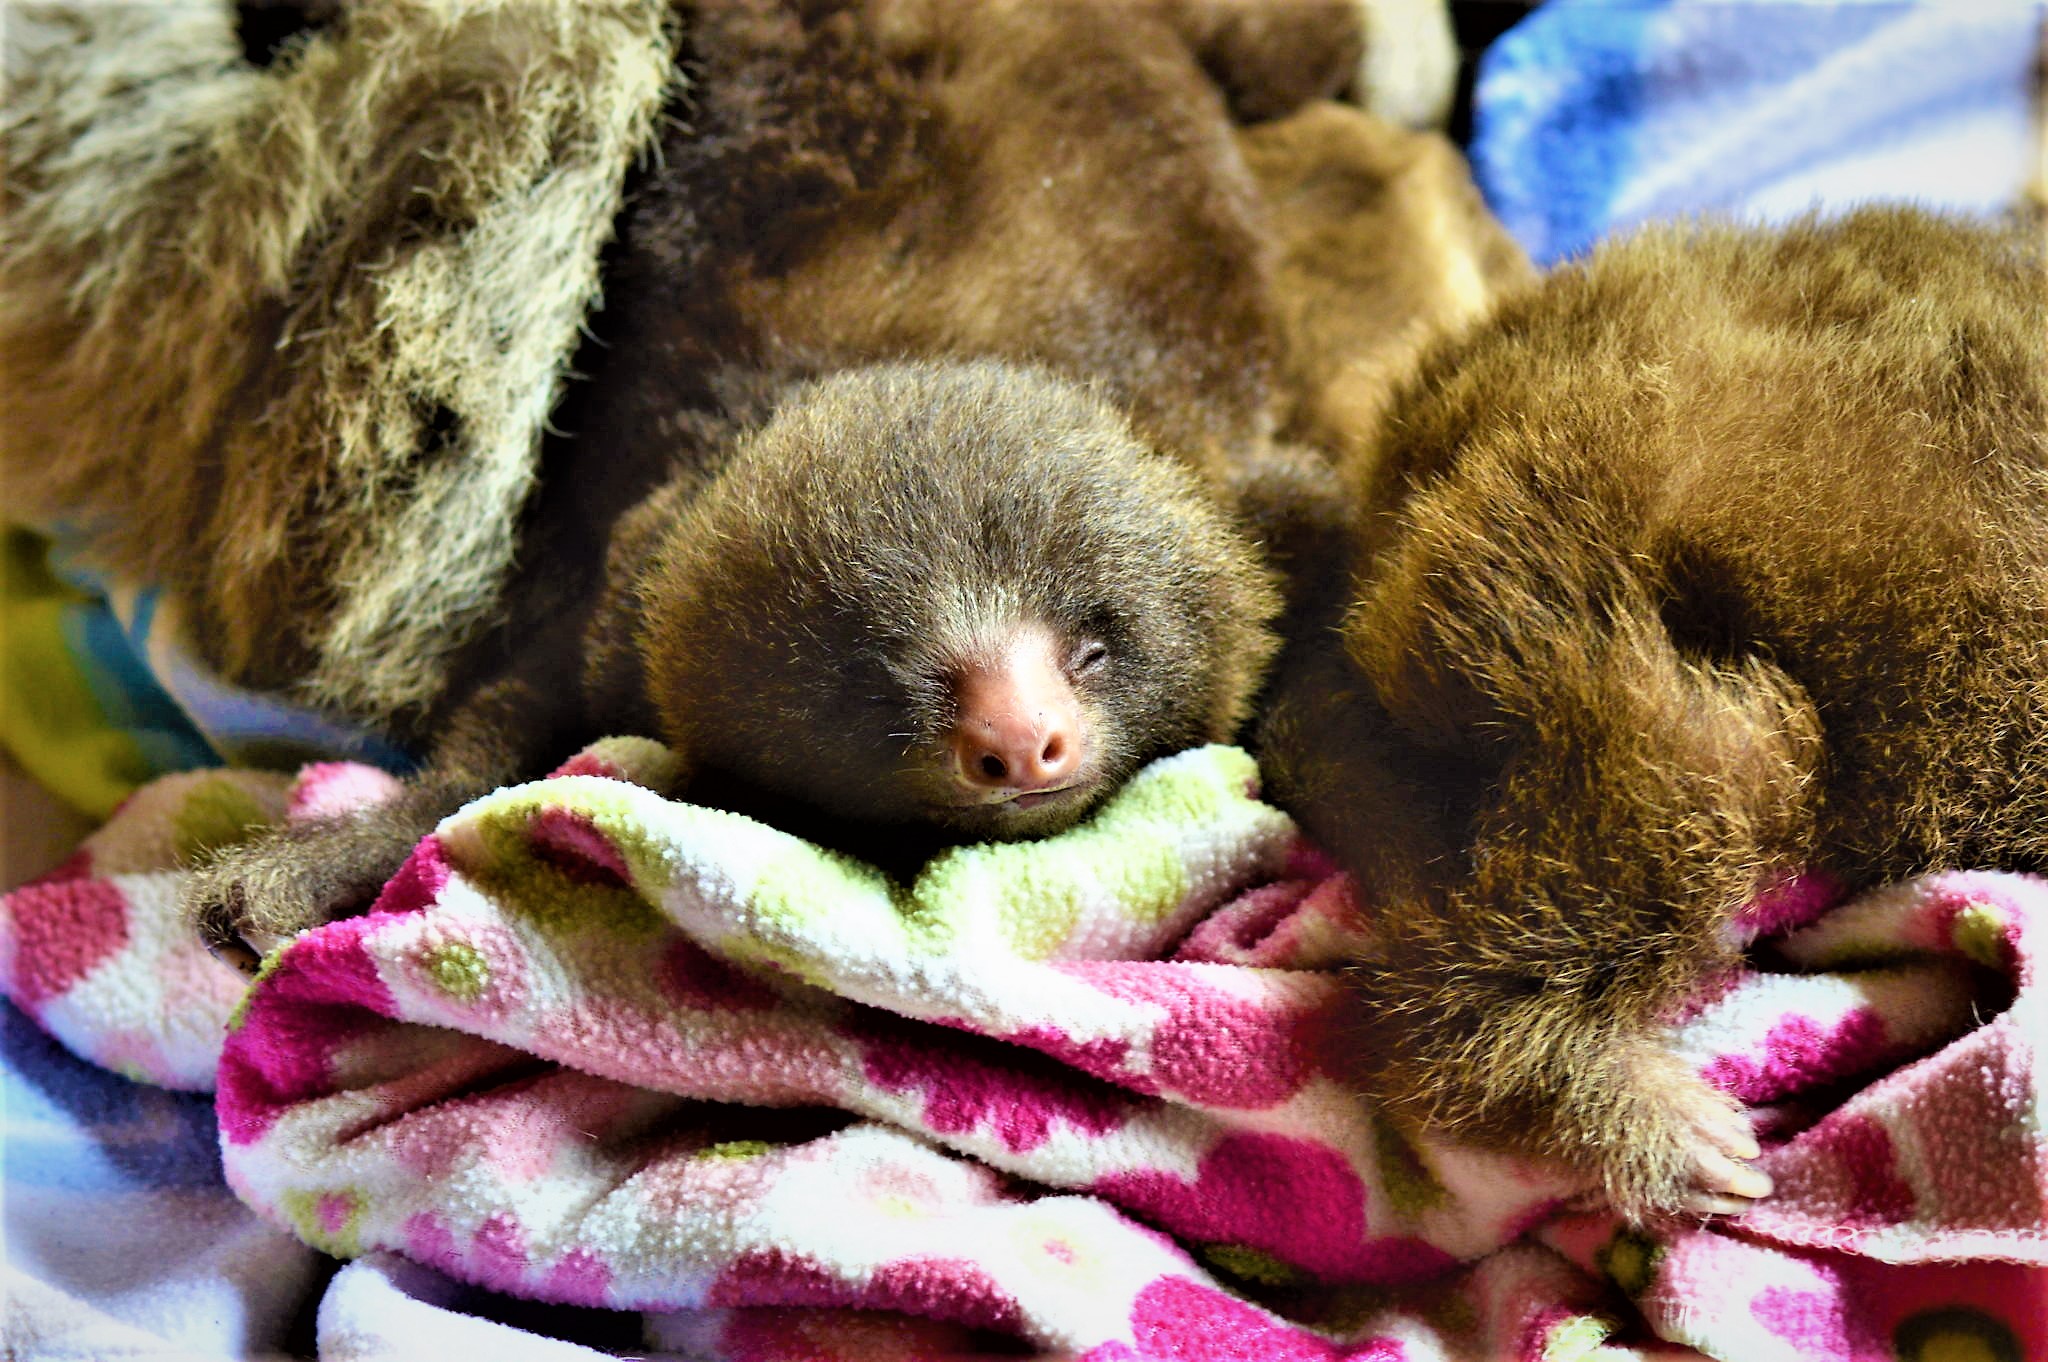 Sloth So Cute I Love Their Sleepy Faces